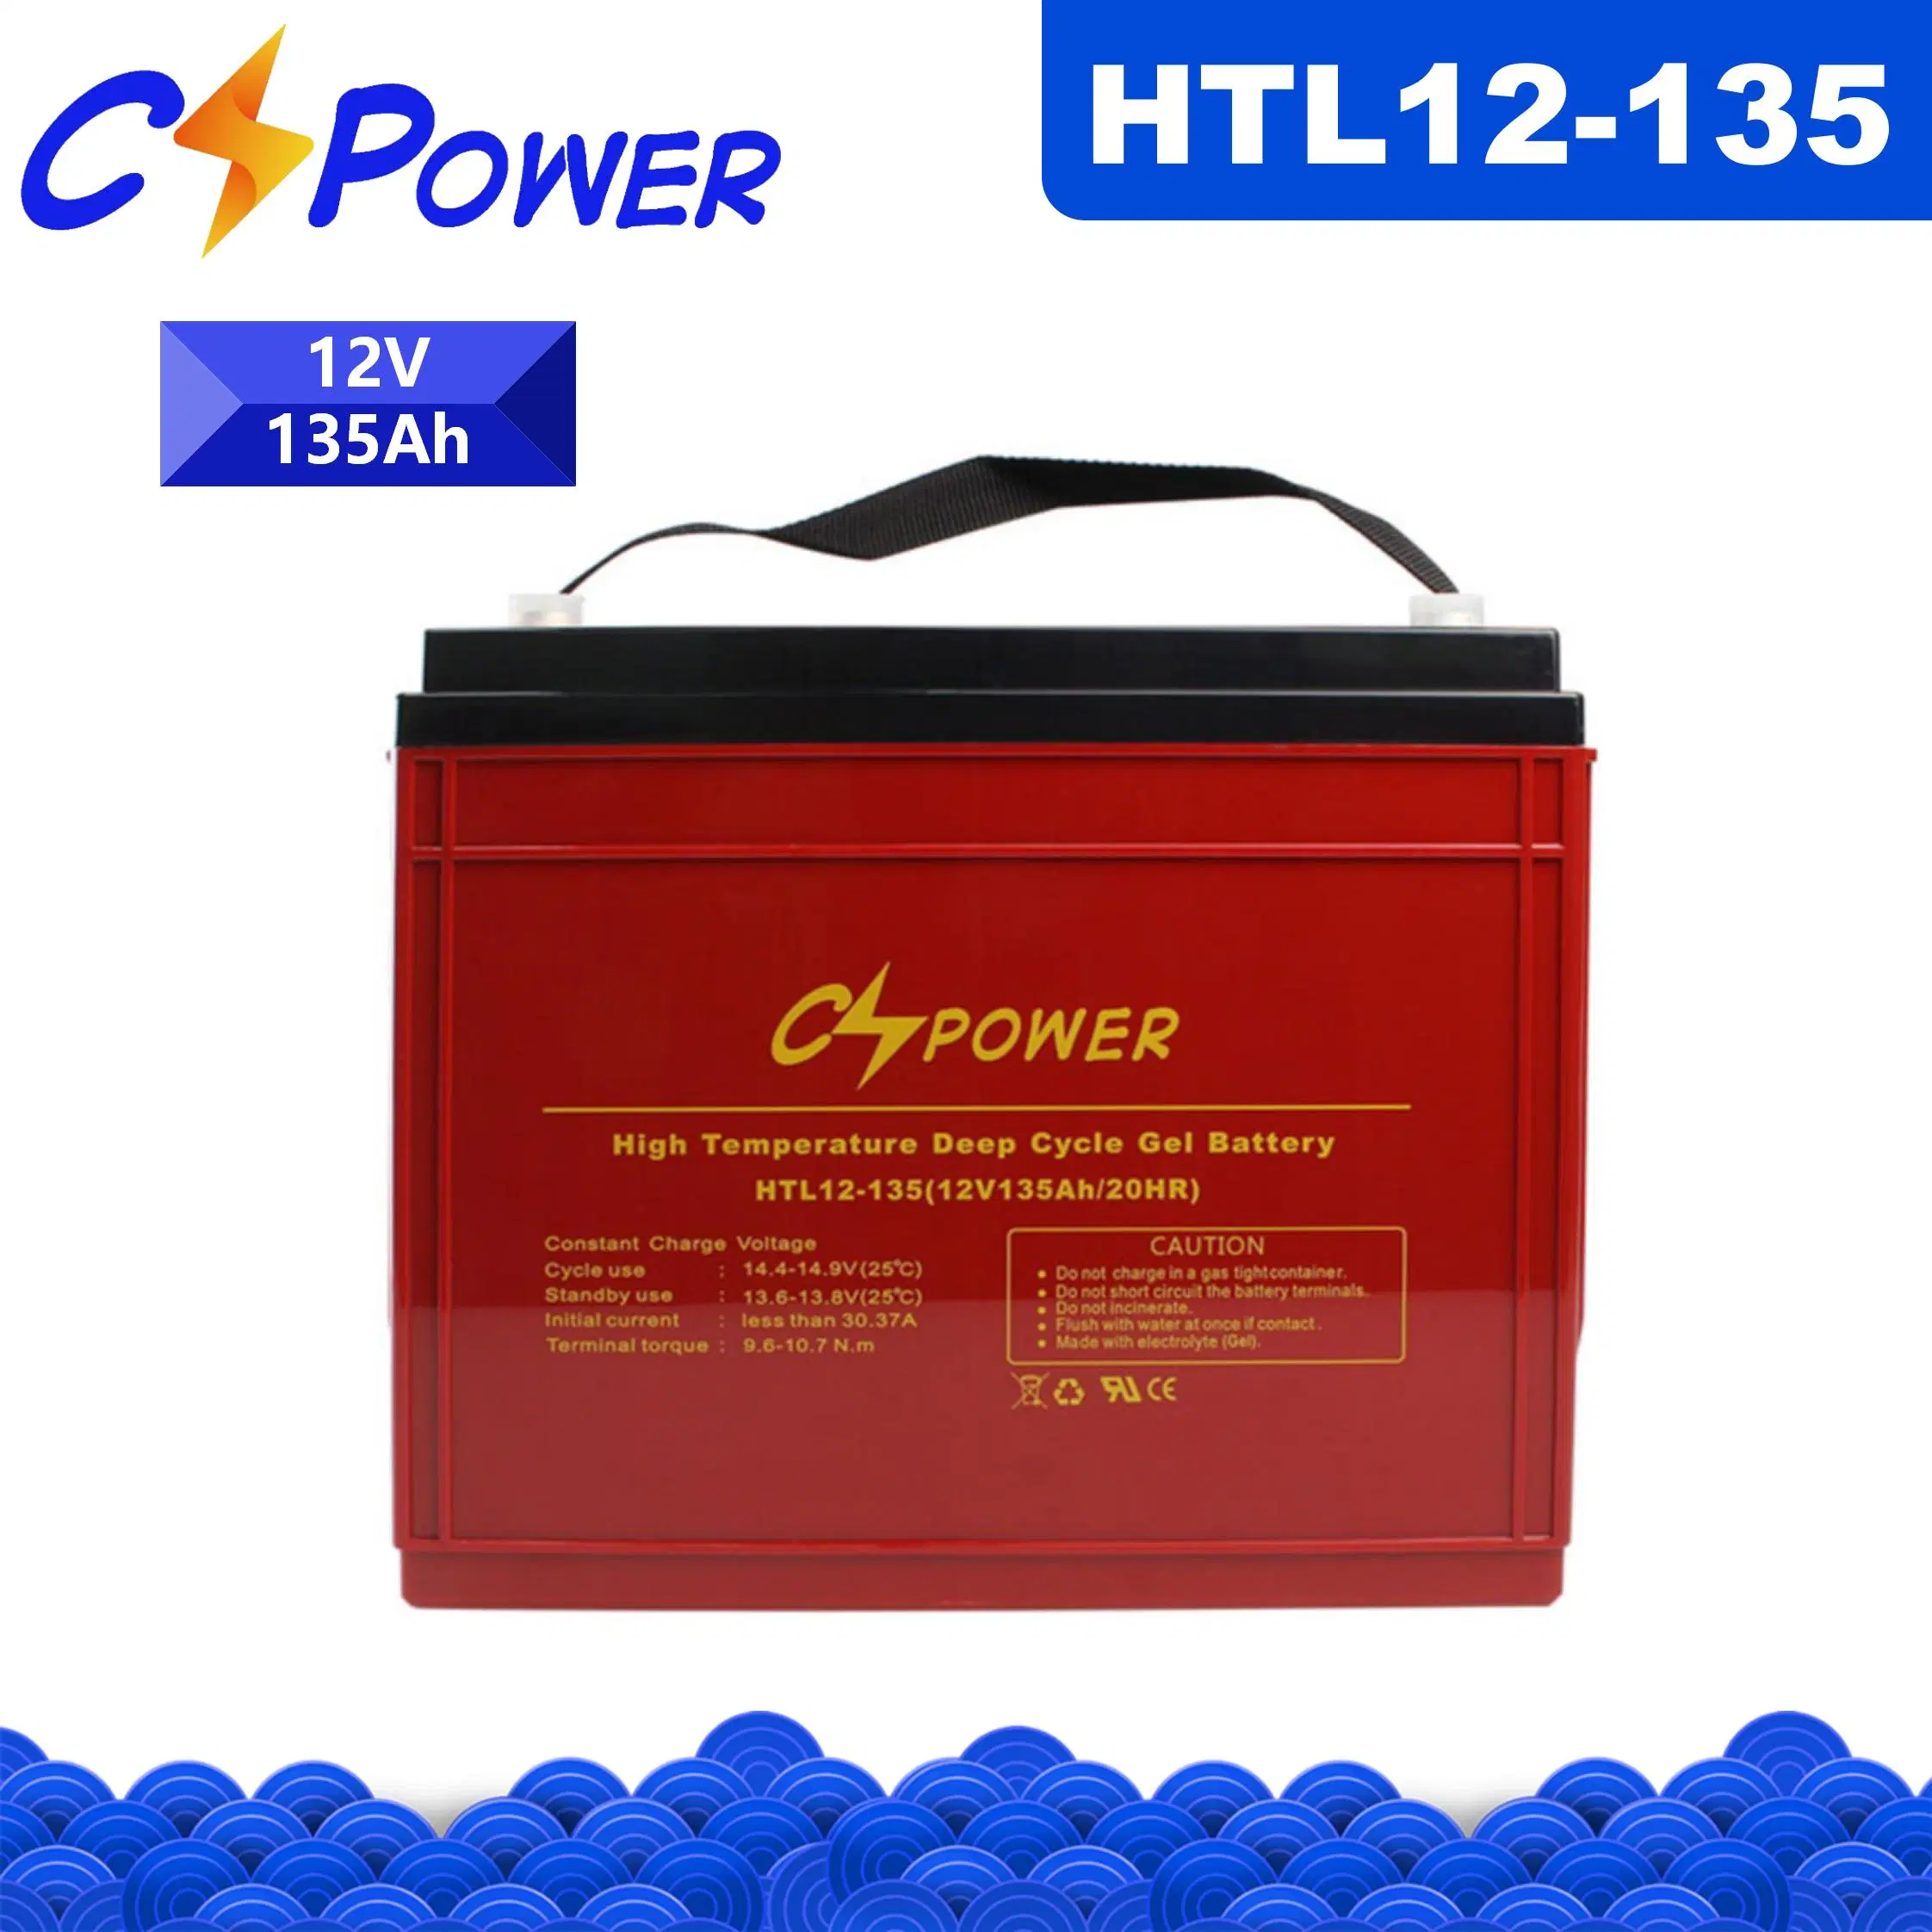 Cspower-abgedichtete Bleisäure Battery12V 135ah-Gelbatterie mit langer Lebensdauer - USV Computer Backup